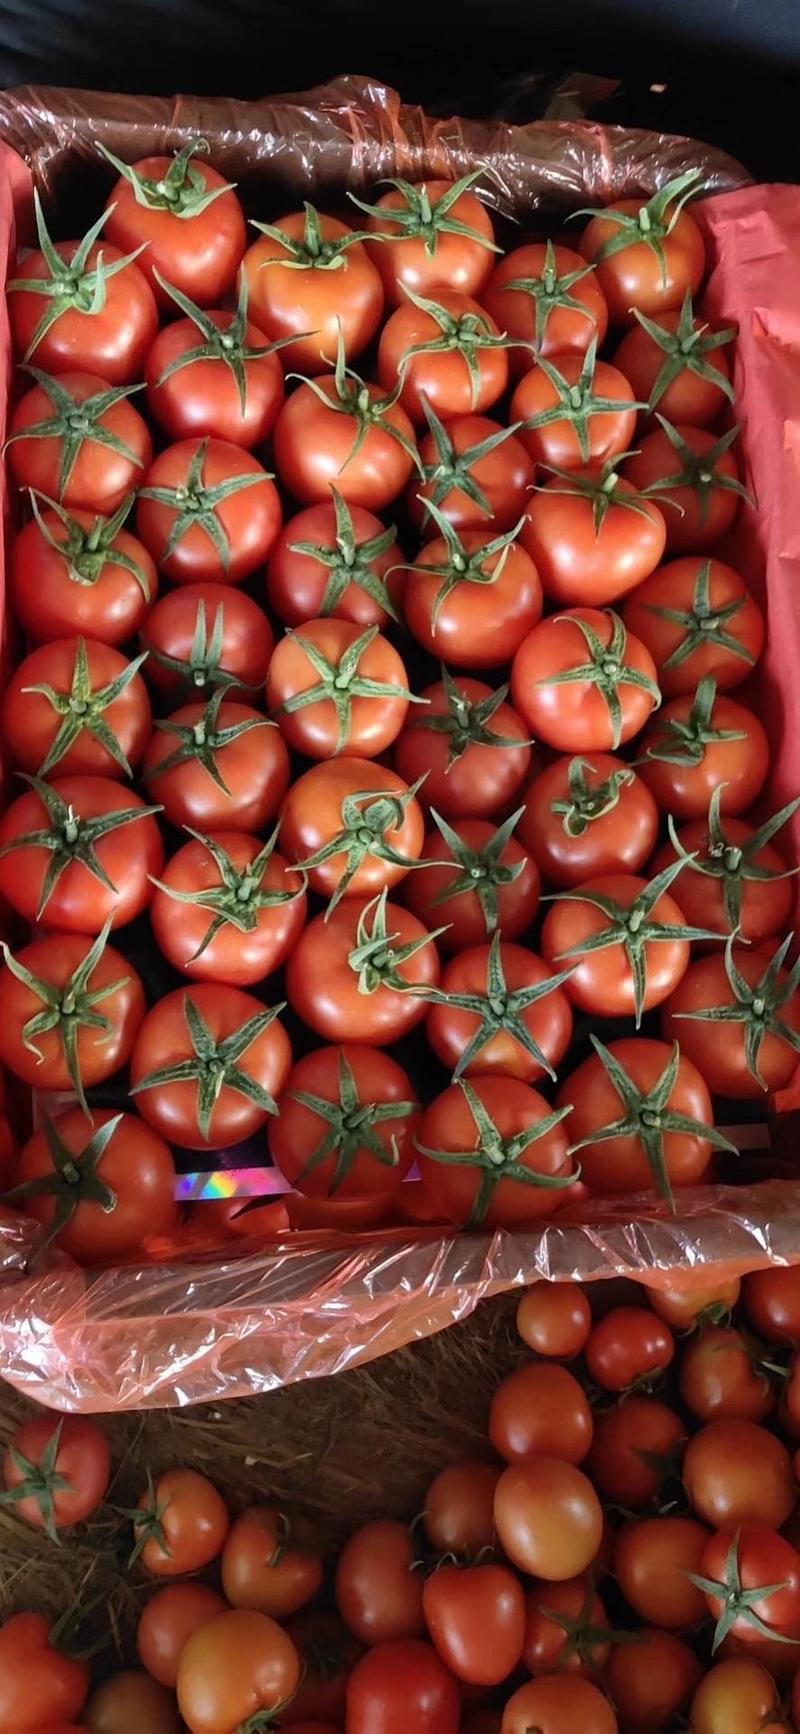 大红西红柿、粉柿子。专业对接出口、商超，批发市场等